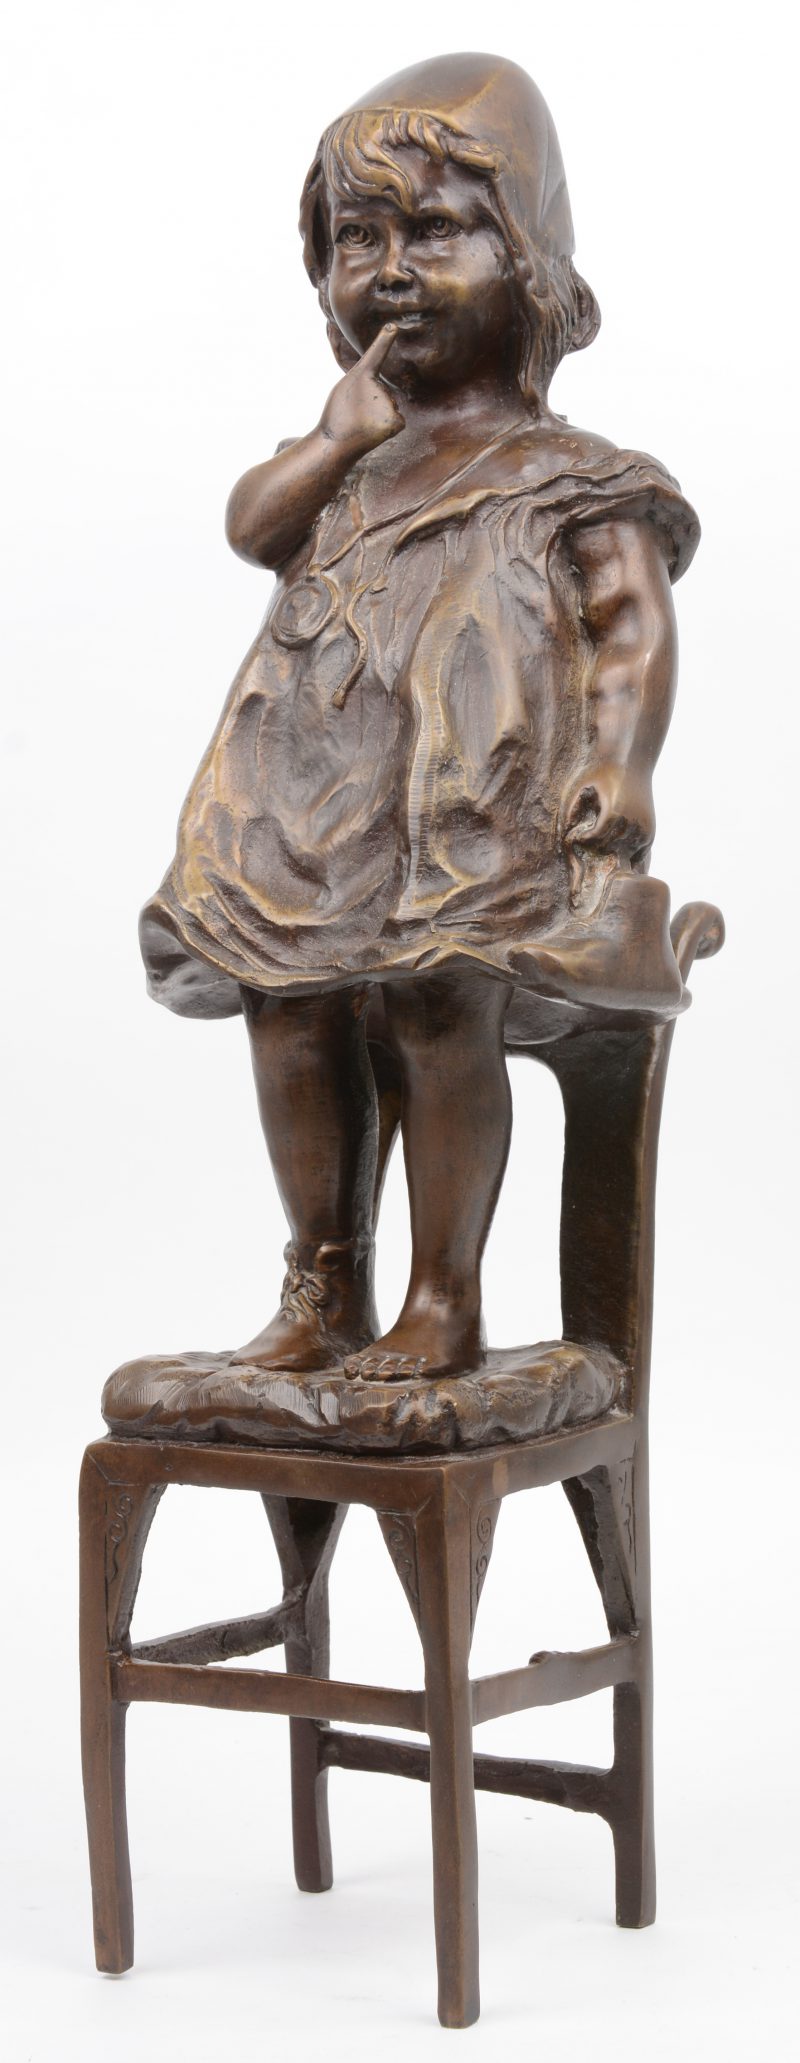 “Ondeugend meisje op stoel”. Beeld van donker gepatineerd brons. Postume geut naar een werk van Juan Clara.